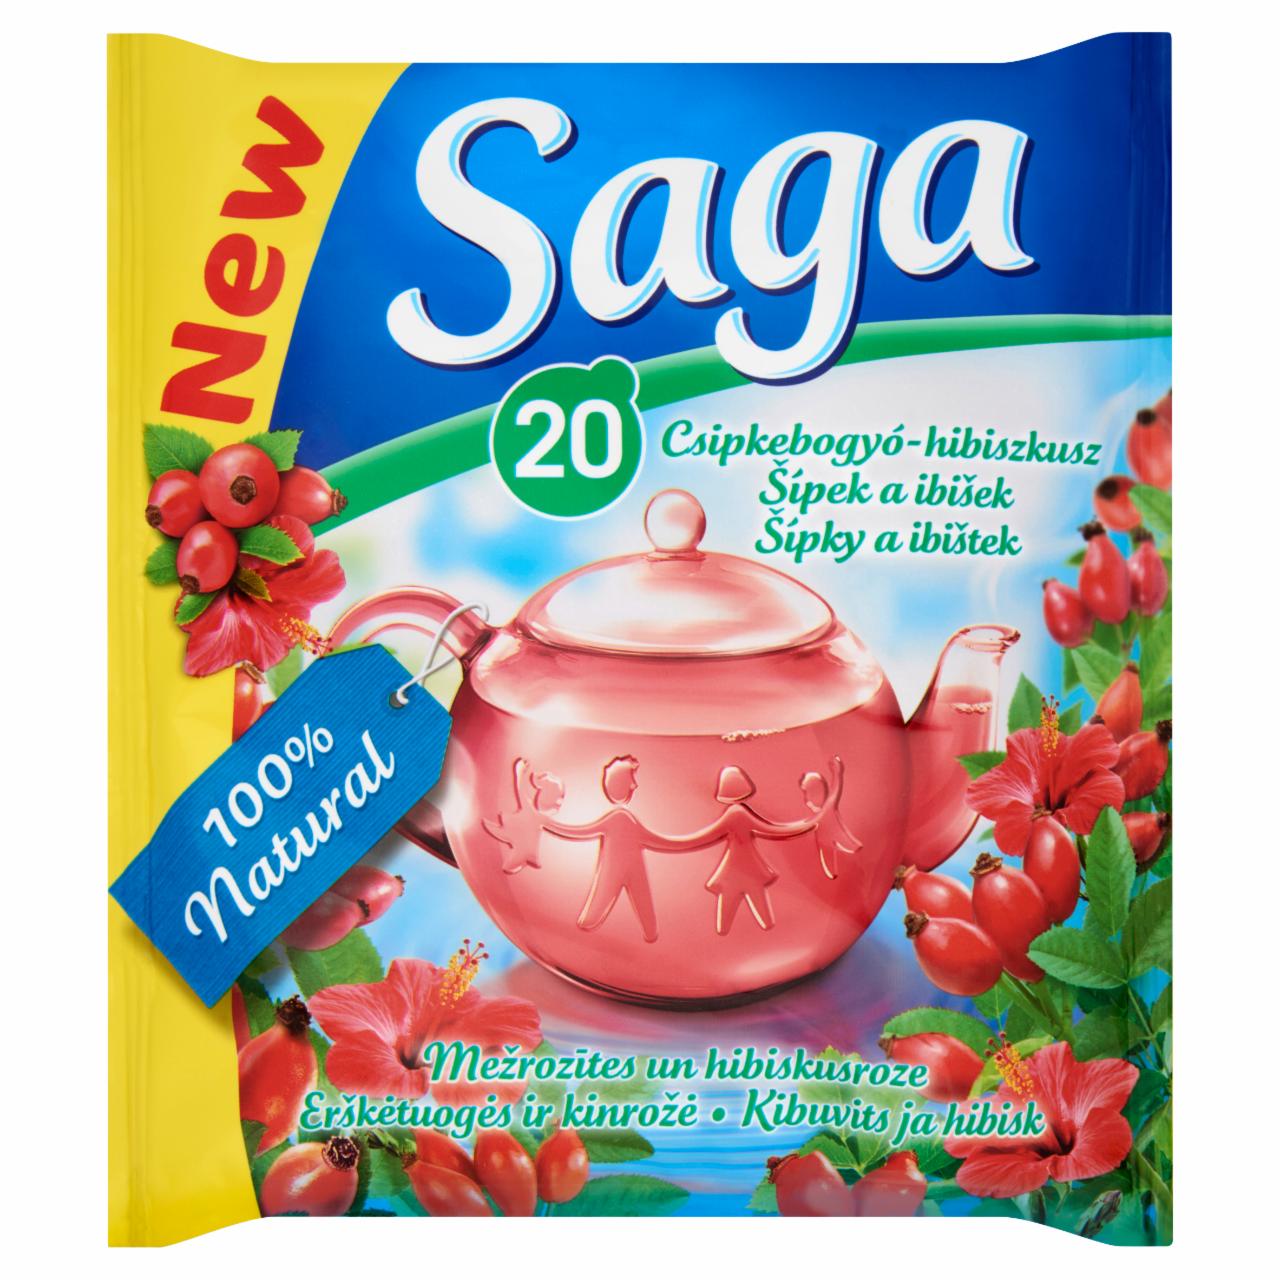 Képek - Saga csipkebogyó-hibiszkusz herba tea 20 filter